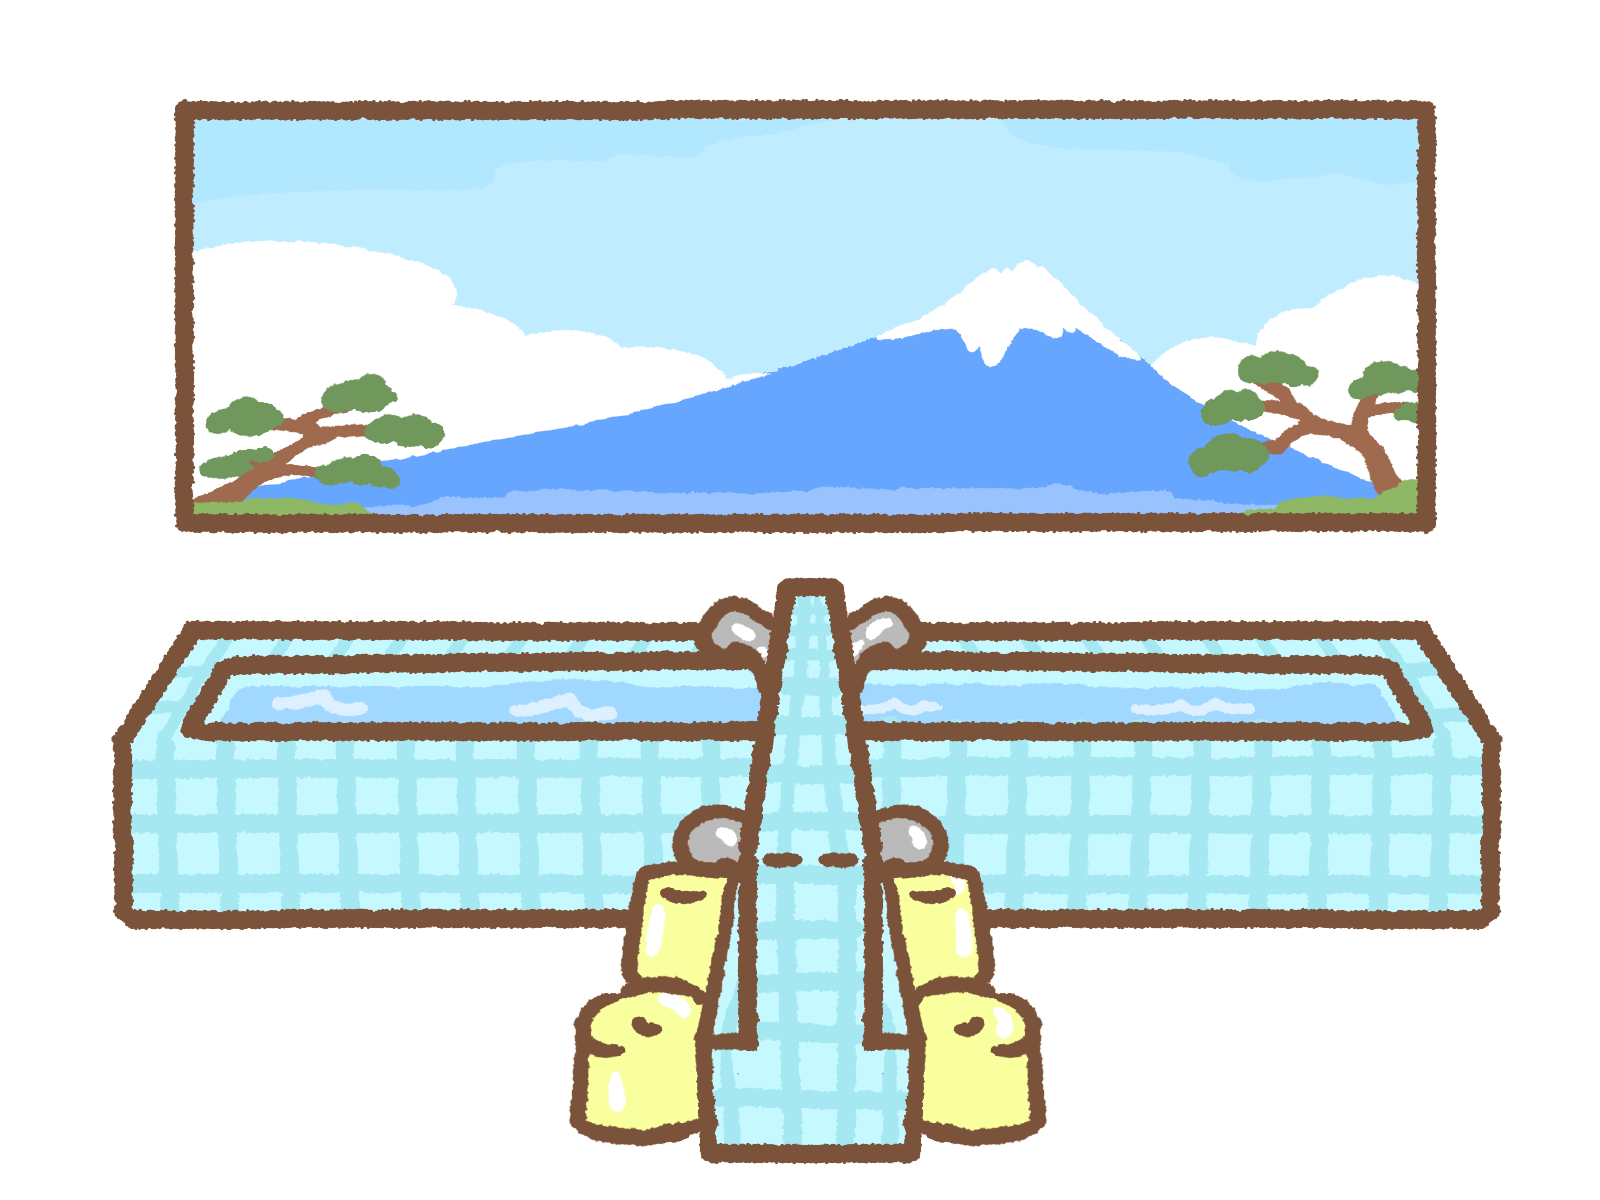 日本の大衆文化として愛され続ける公衆浴場 銭湯 お金のストーリー